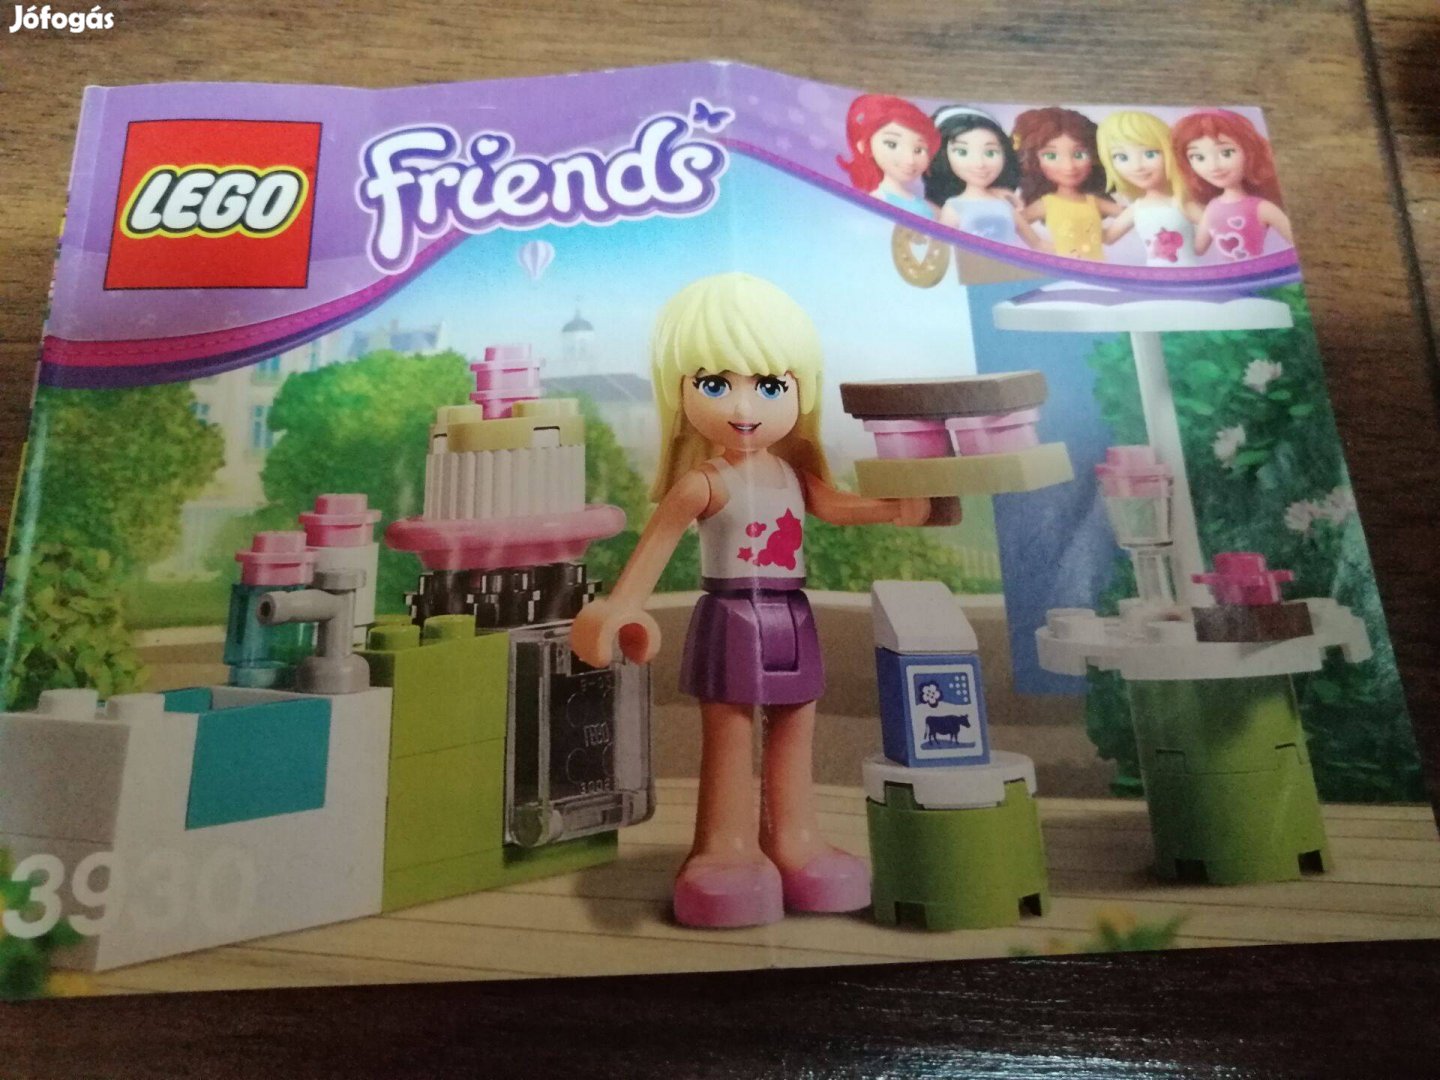 Lego Friends 3930 használt készlet